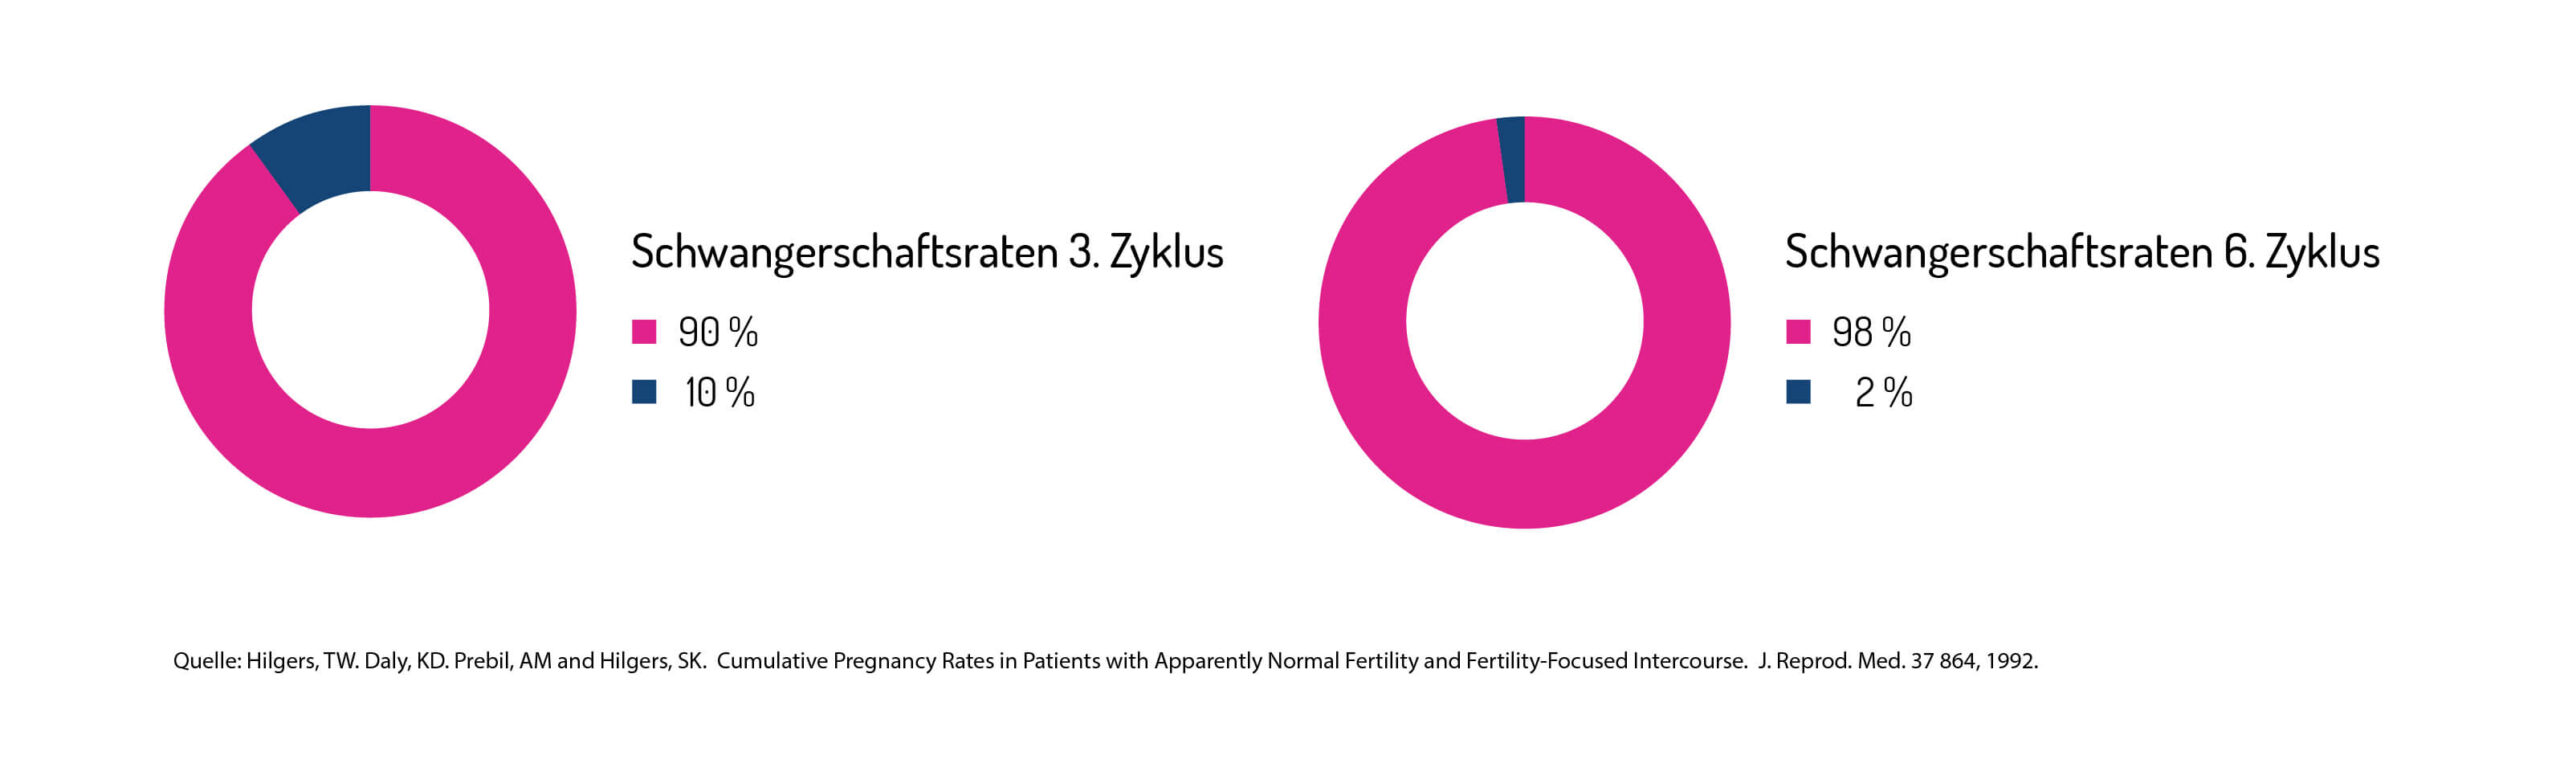 Statistik: Schwangerschaftswahrscheinlichkeit Zervixschleim